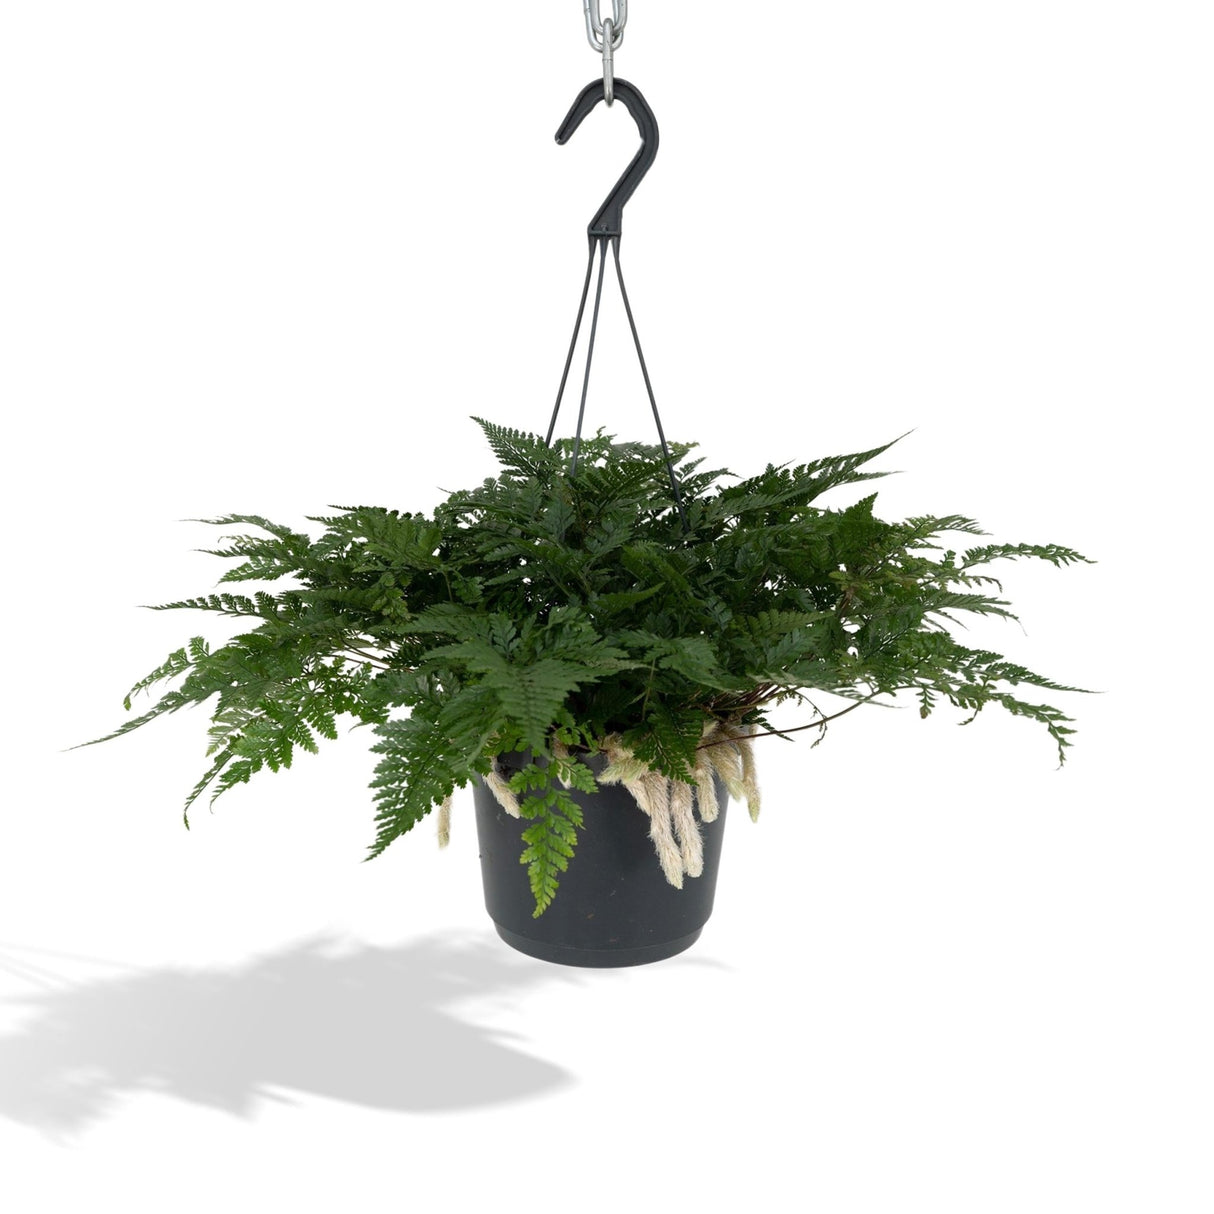 RARE plante d'intérieur tropicale vivante Piper Parmatum garden 4 cadeau  en pot